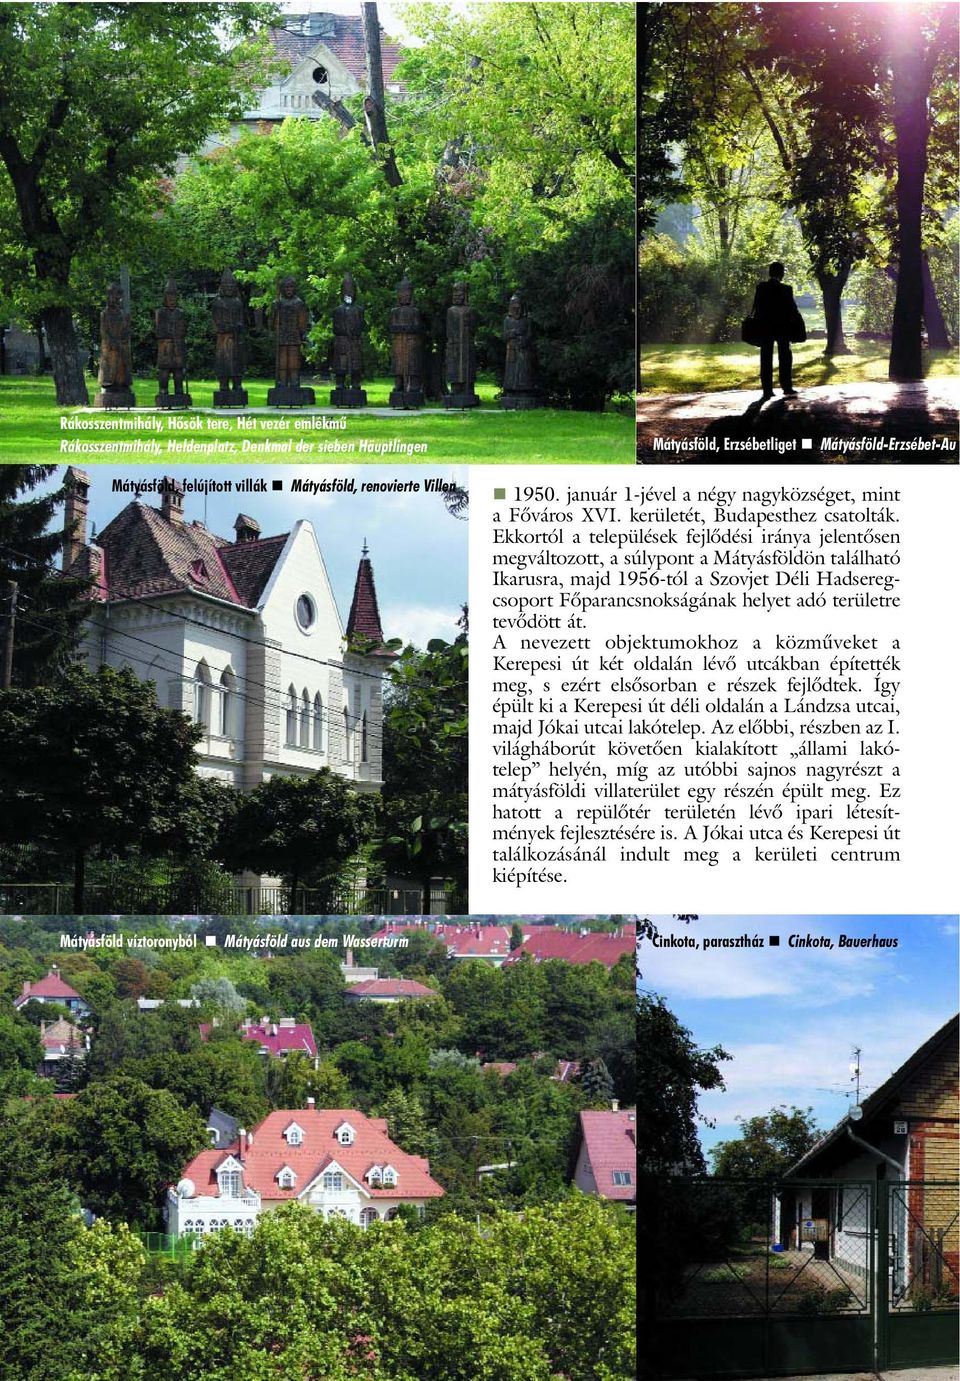 Ekkortól a települések fejlôdési iránya jelentôsen megváltozott, a súlypont a Mátyásföldön található Ikarusra, majd 1956-tól a Szovjet Déli Hadseregcsoport Fôparancsnokságának helyet adó területre